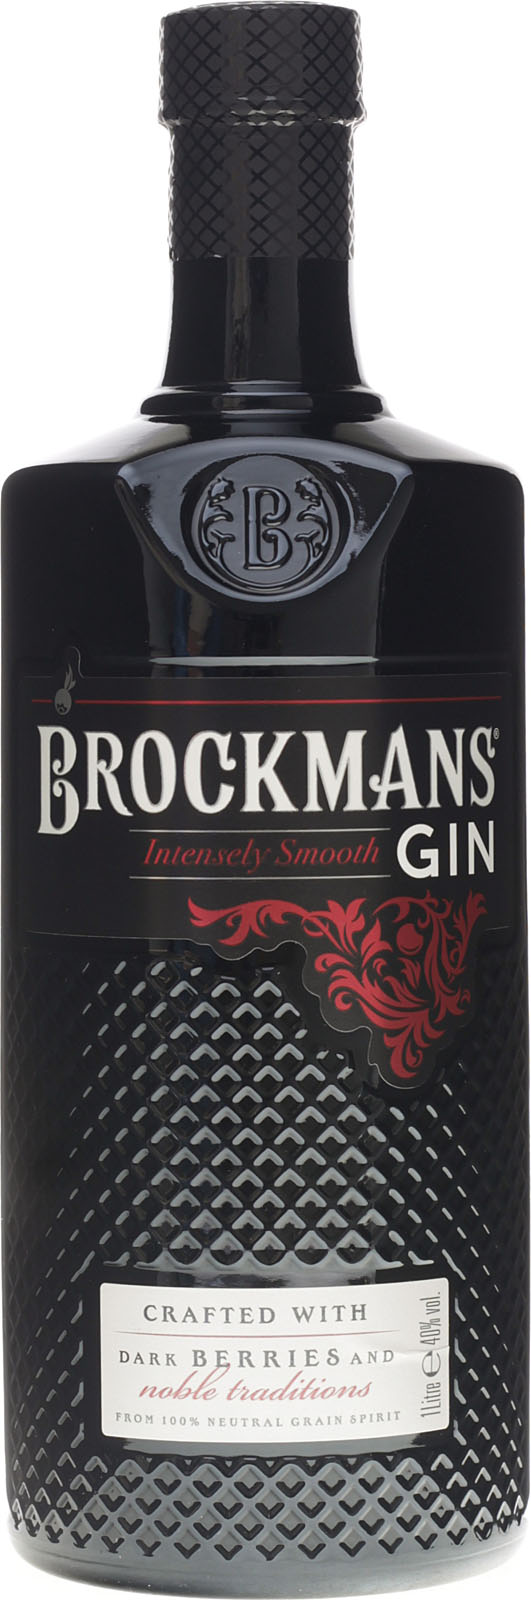 Brockmans Intensely Smooth Premium Gin günstig im Shop